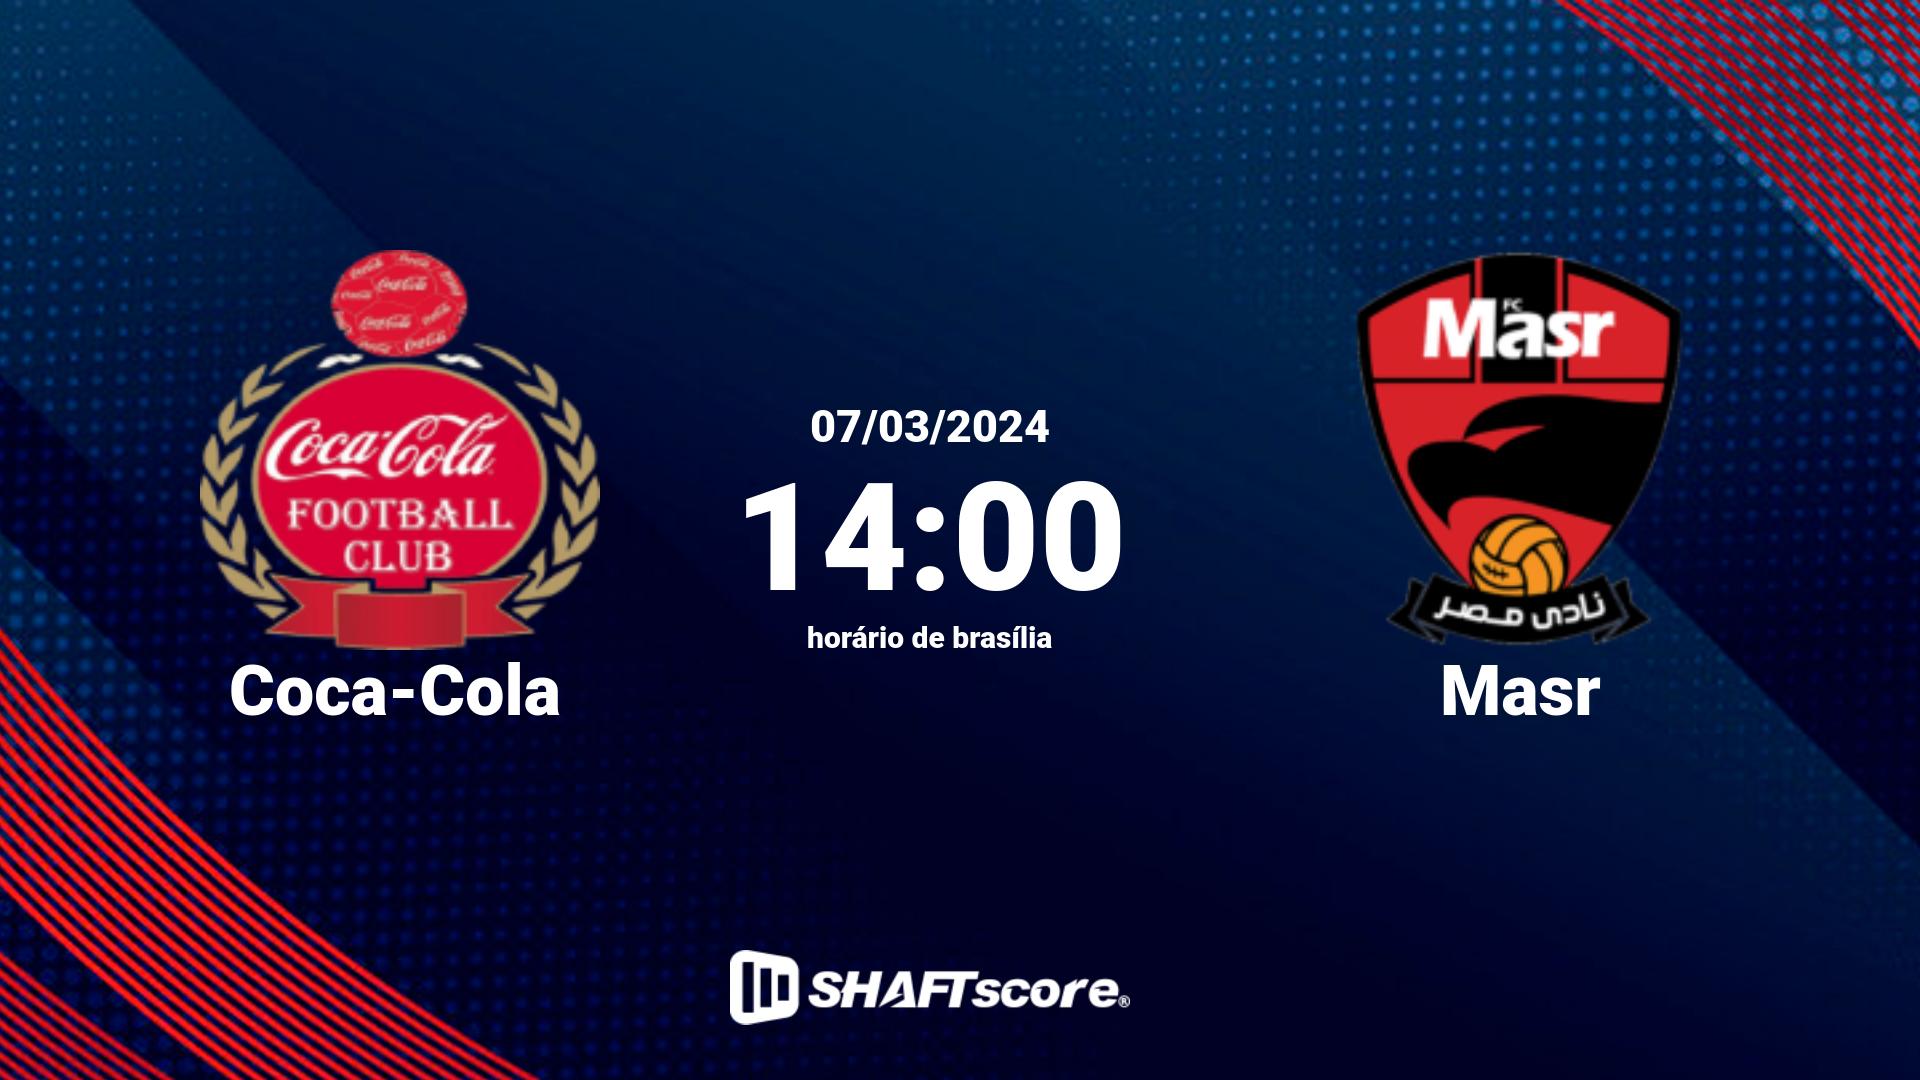 Estatísticas do jogo Coca-Cola vs Masr 07.03 14:00